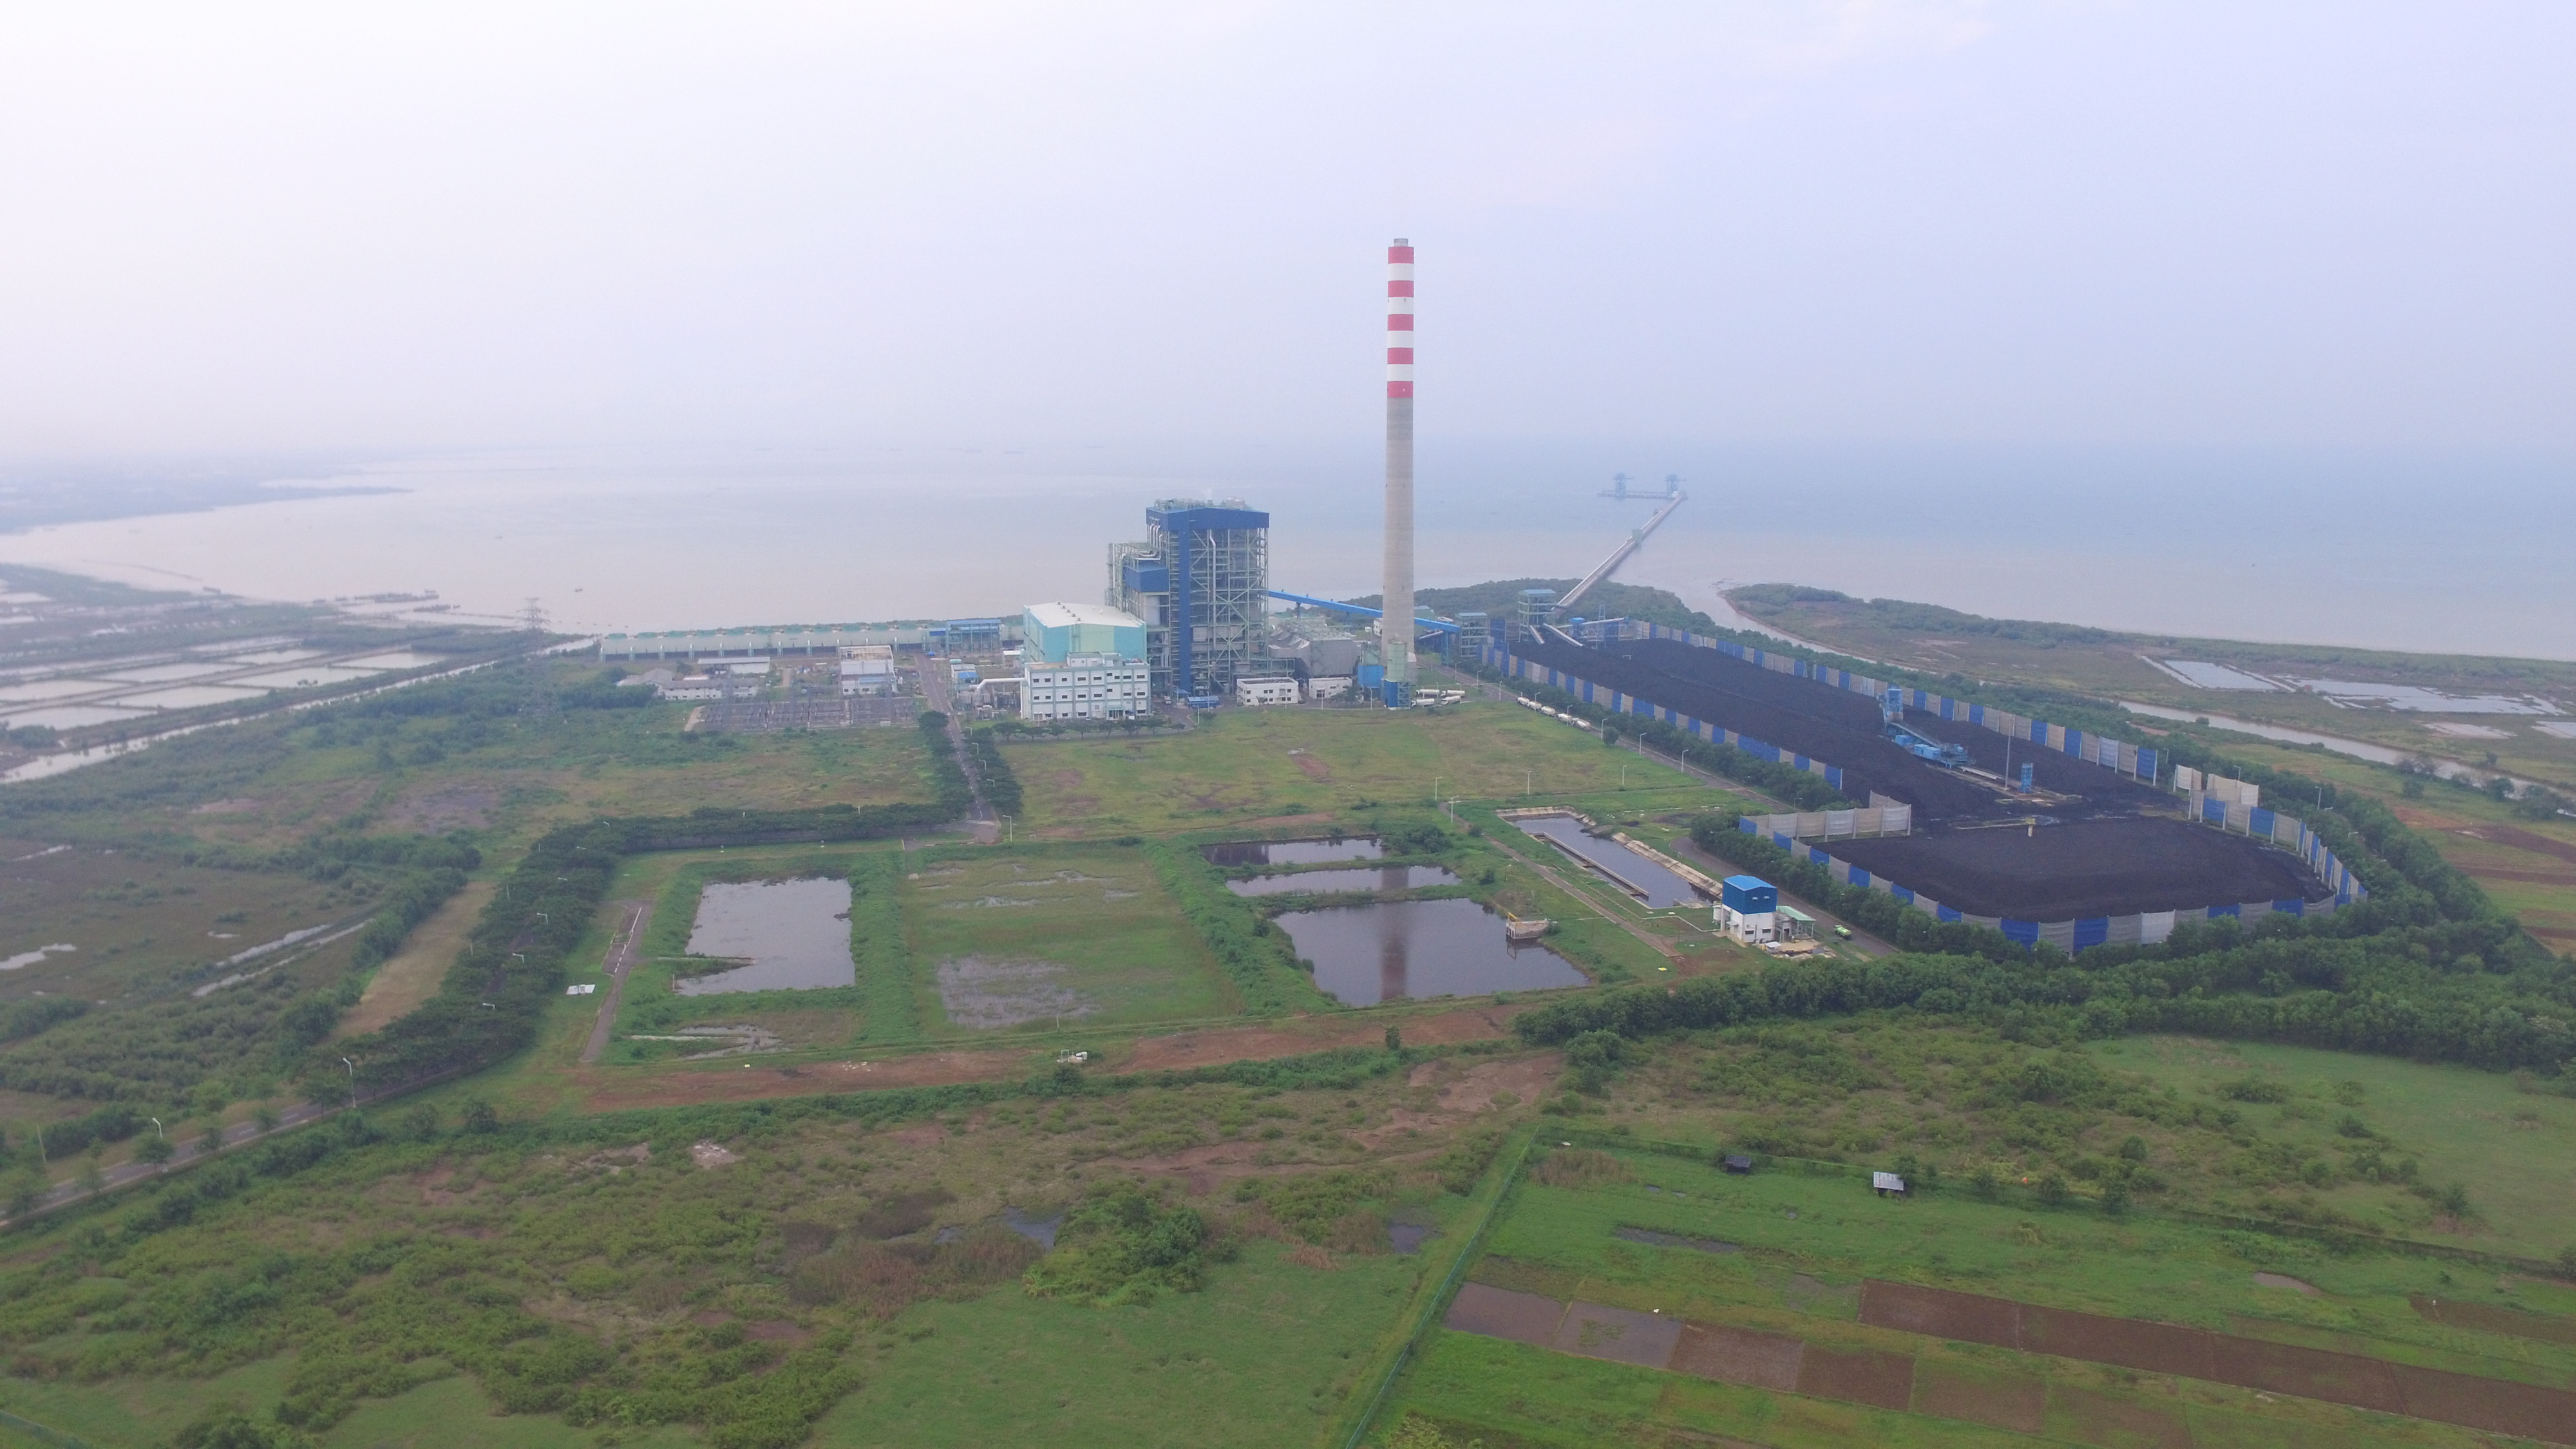 インドネシア・チレボン石炭火力発電事業で国際CSR規範の不遵守が計66箇所に！腐敗の実態も明らかに